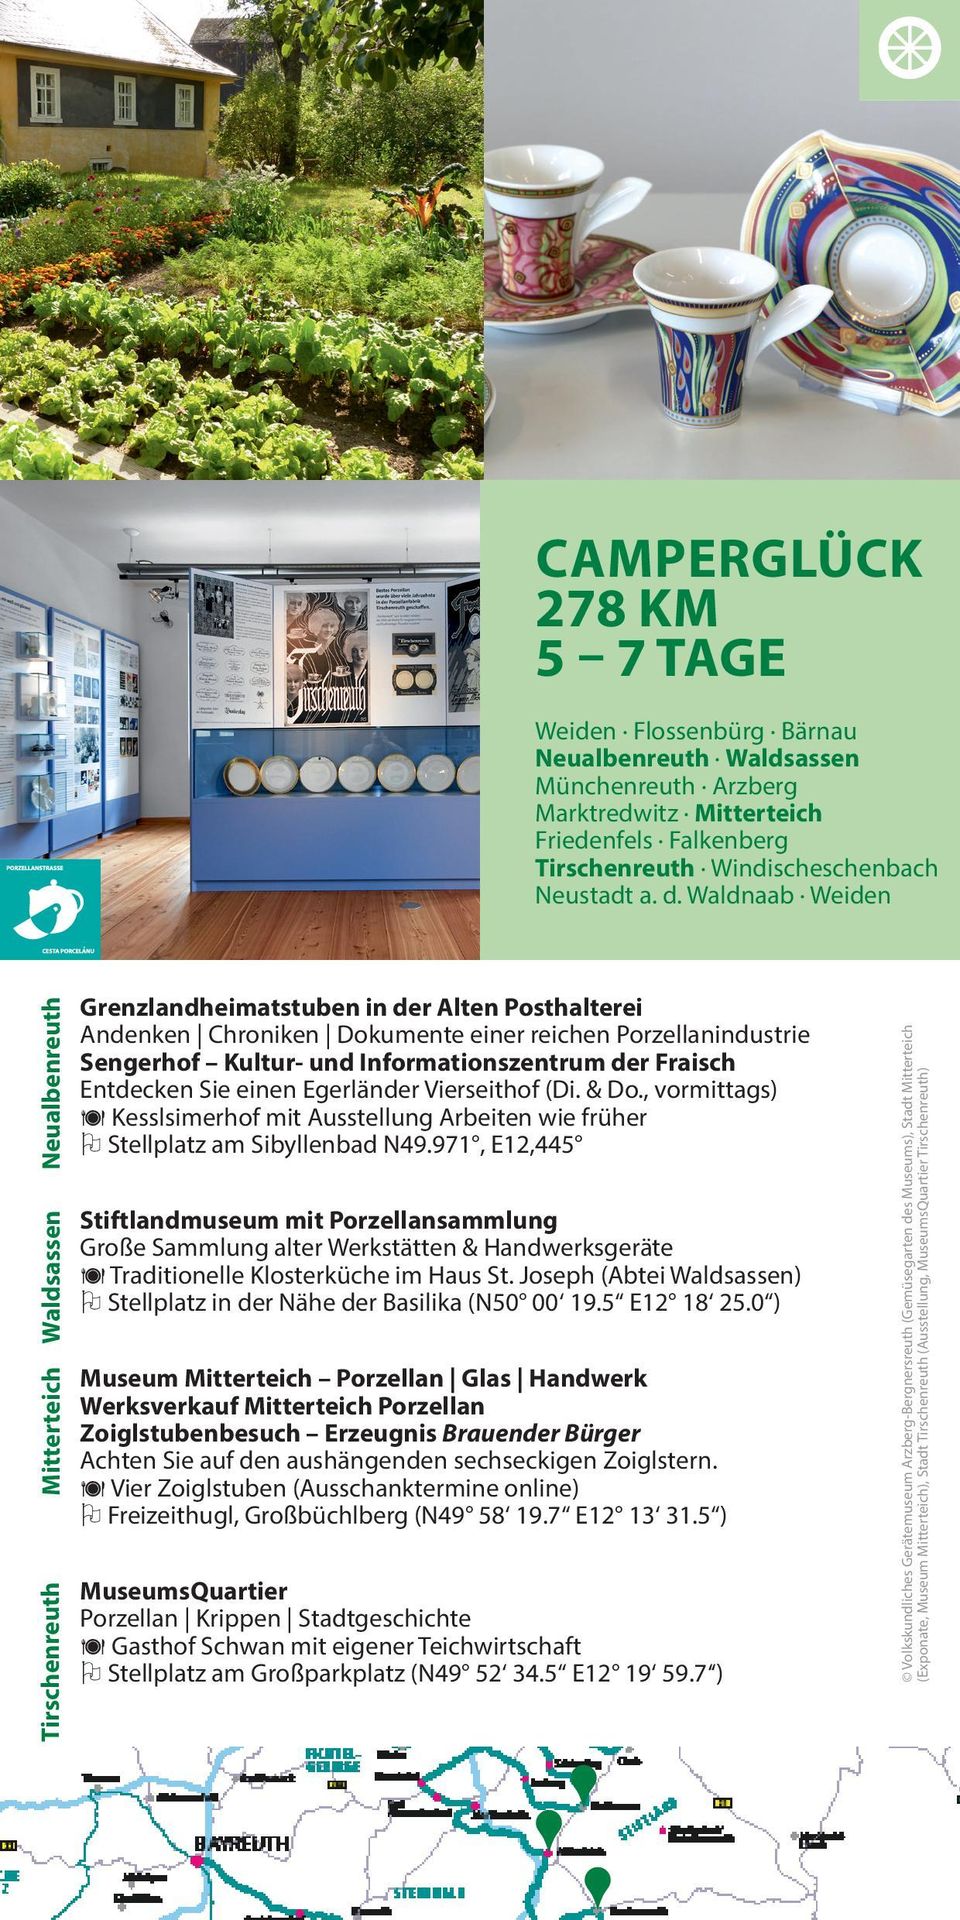 Informationszentrum der Fraisch Entdecken Sie einen Egerländer Vierseithof (Di. & Do., vormittags) ä Kesslsimerhof mit Ausstellung Arbeiten wie früher O Stellplatz am Sibyllenbad N49.